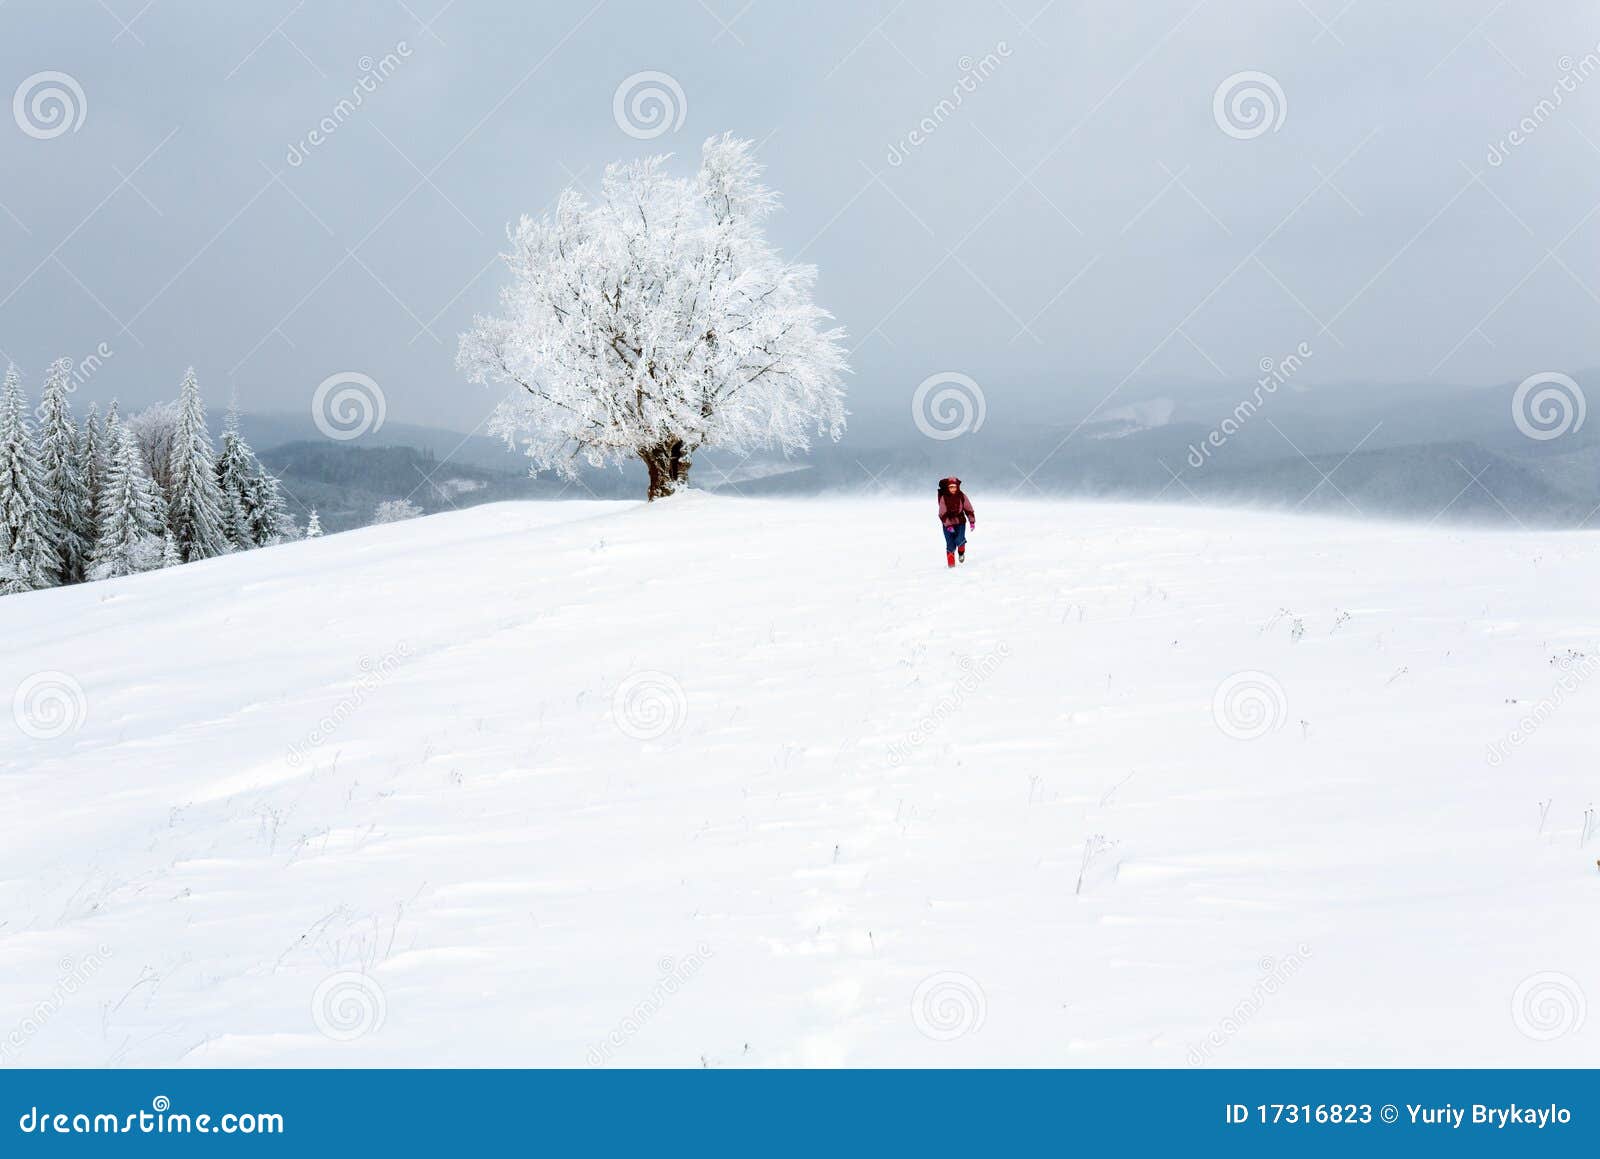 winter inclement snowy landscape